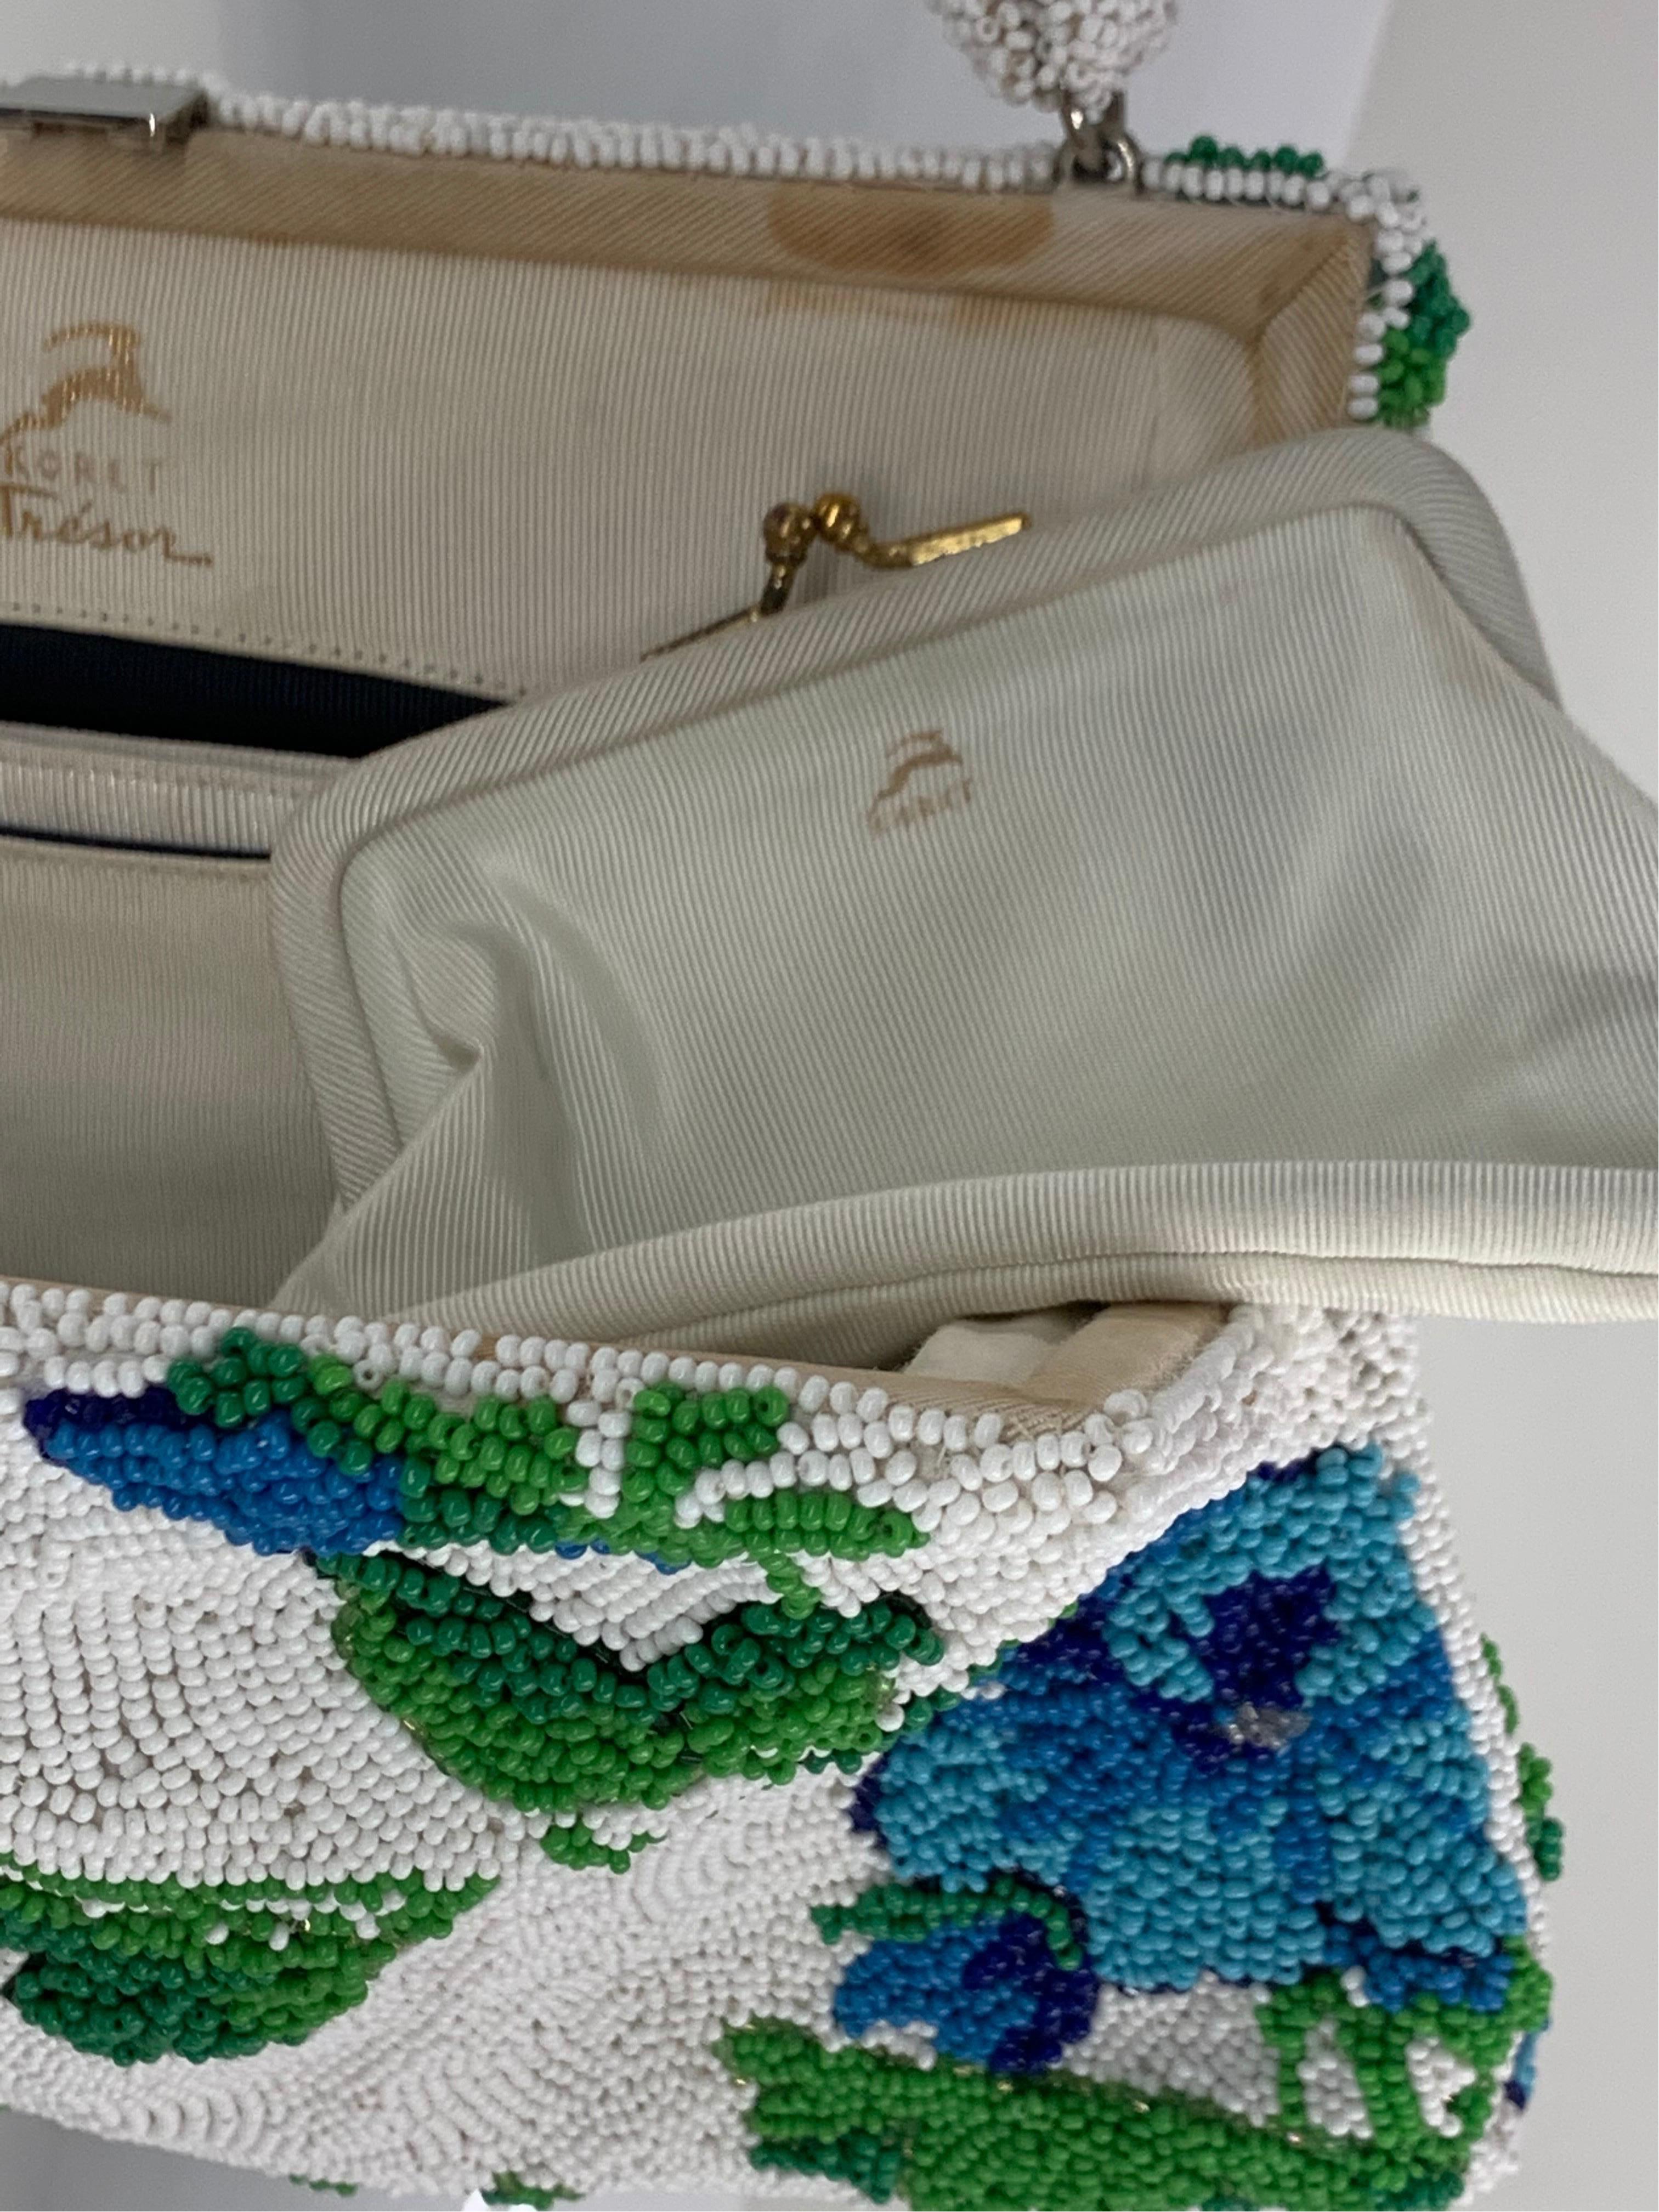 1950 Koret Tresor Stunning Floral Beaded Handbag In Green & Blue On White Ground For Sale 6